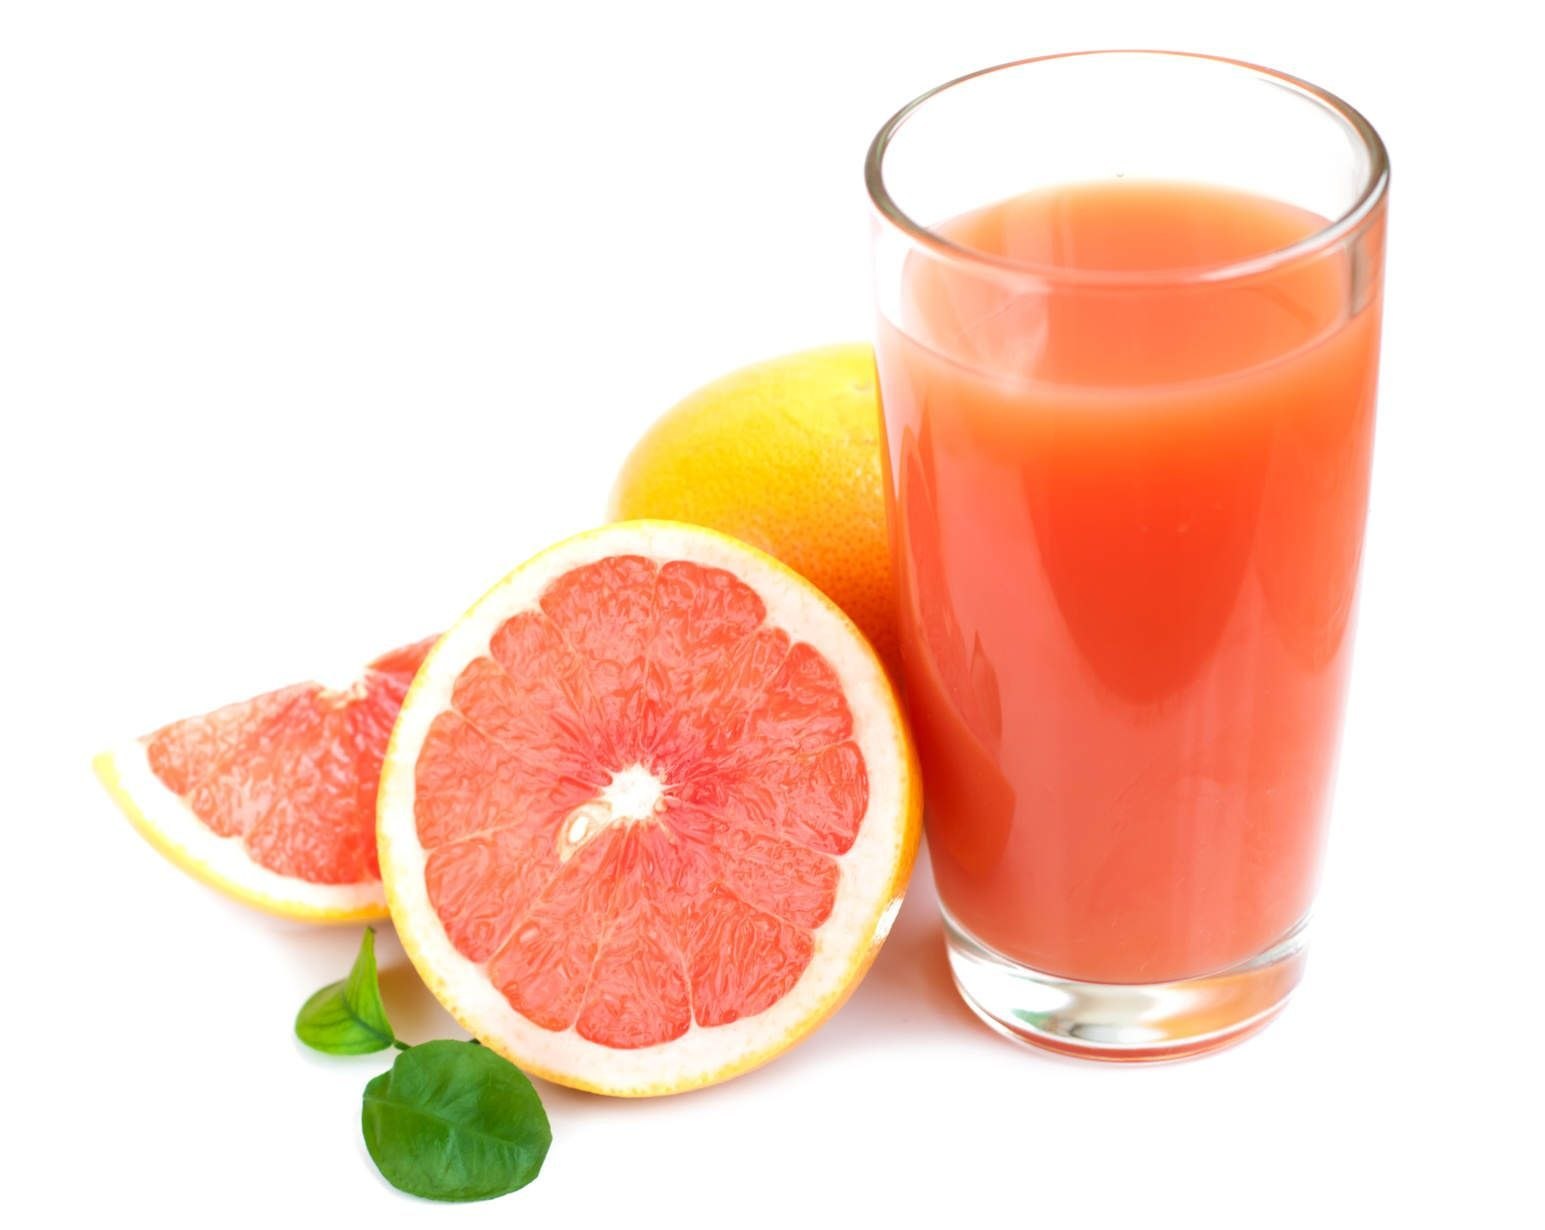 Грейпфрутовый сок можно. Фреш грейпфрут. Грейпфрутовый лимонад. Апельсин - грейпфрутовый сок. Стакан грейпфрутового сока.